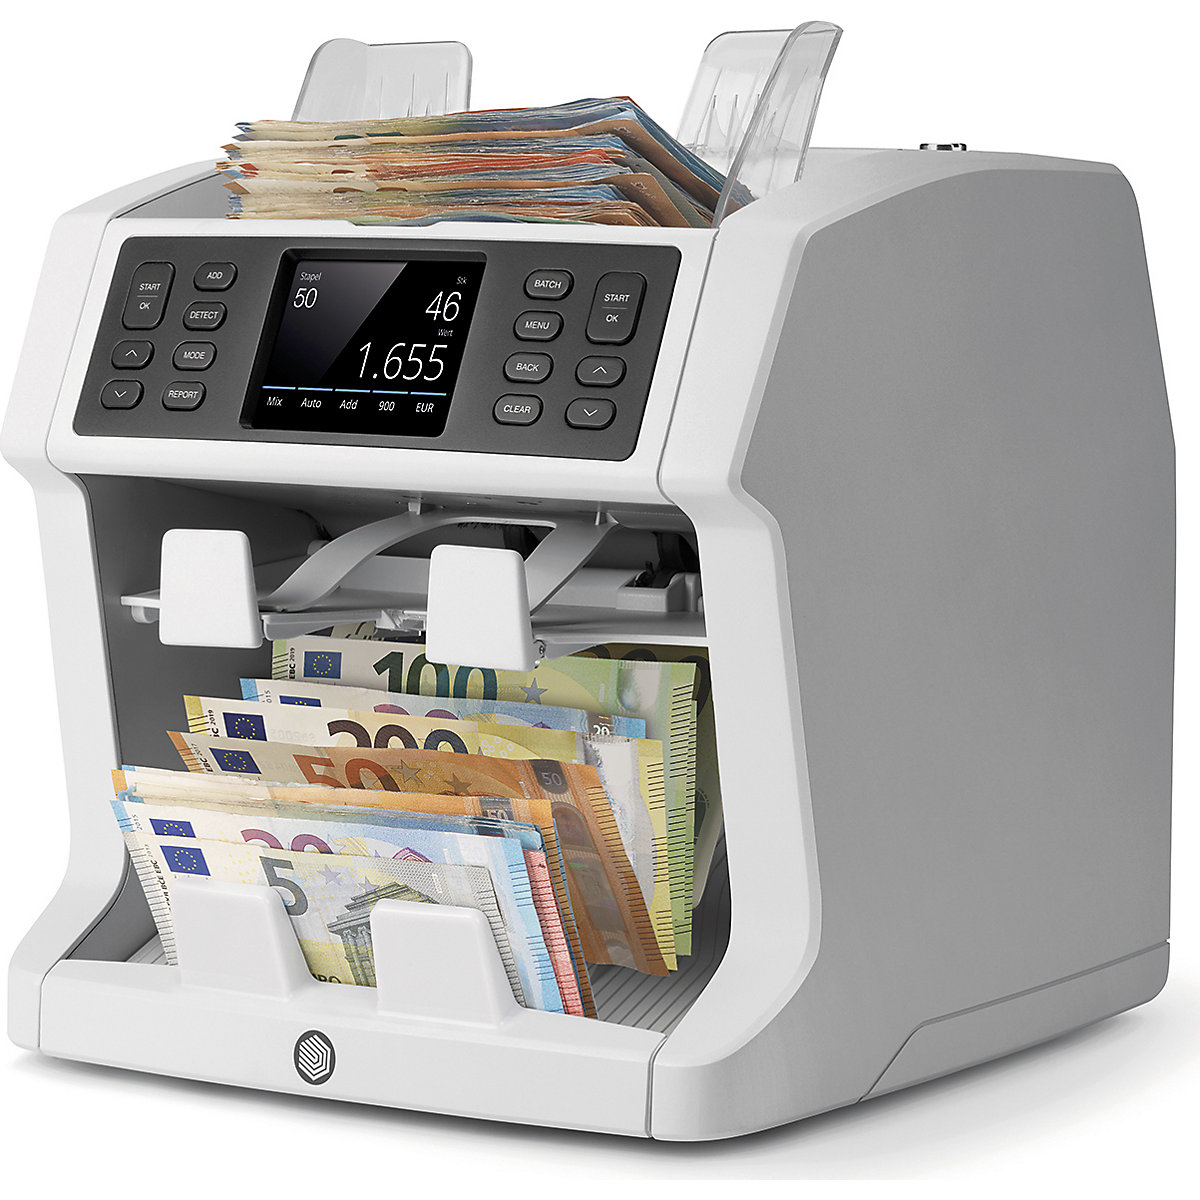 Máquina de contar dinheiro para contagem não organizada com função de organização – Safescan